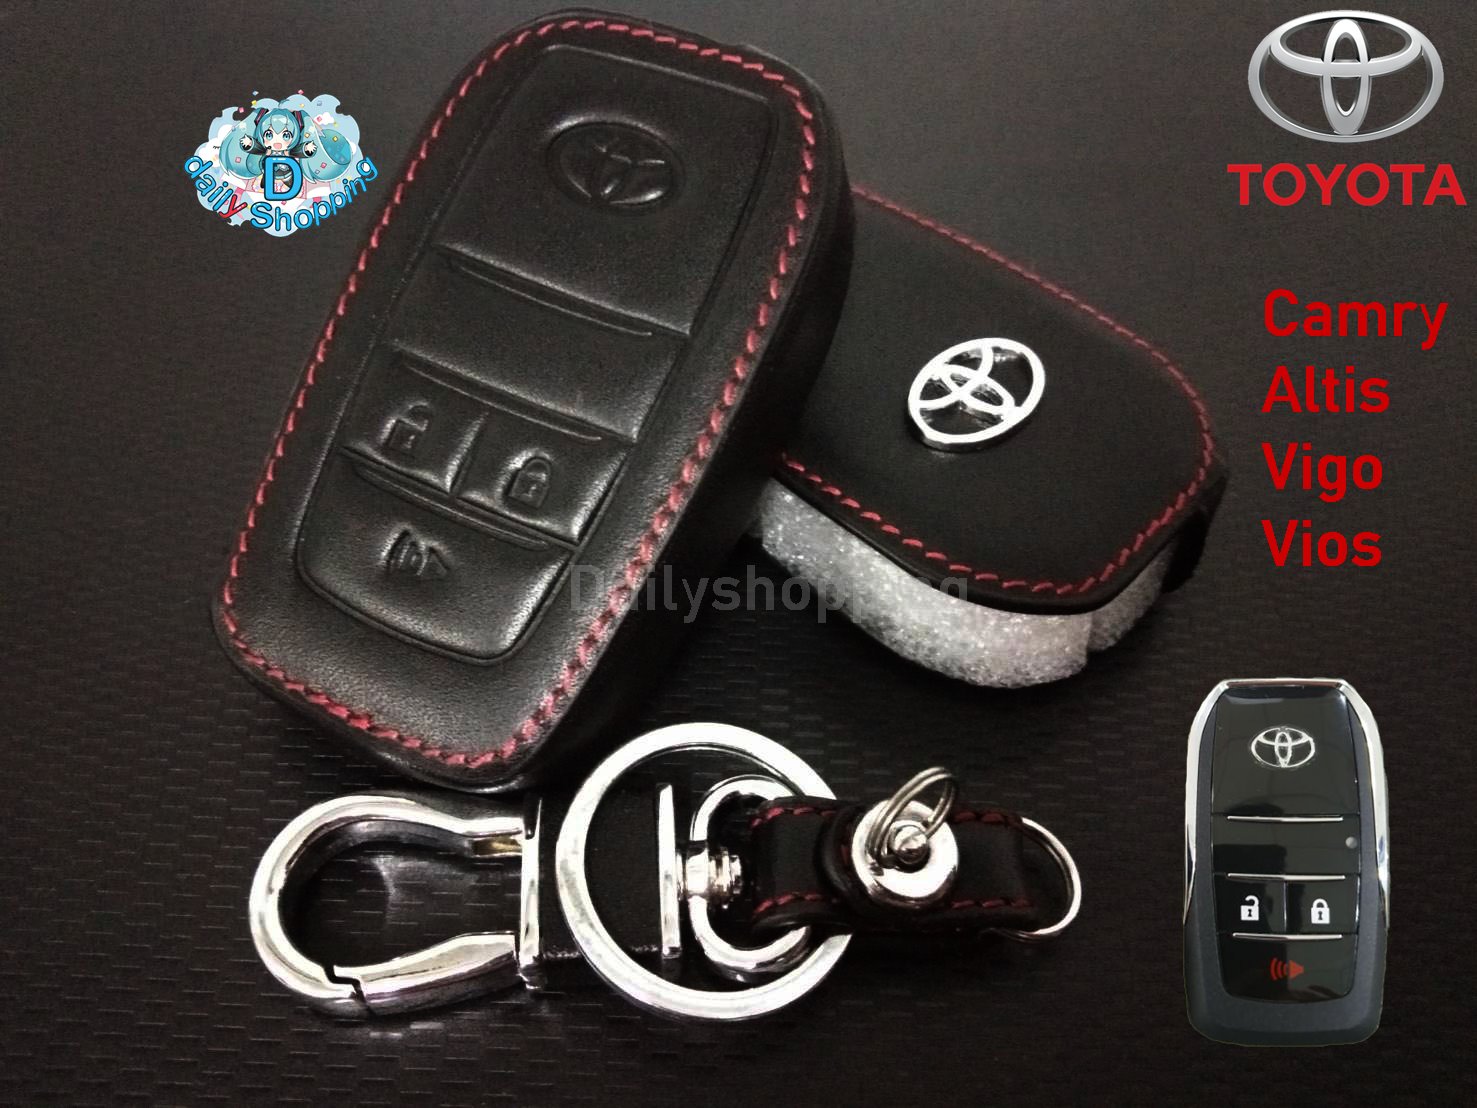 ซองกุญแจหนัง กระเป๋าใส่กุญแจ ซองกุญแจ สีดำ สำหรับ Toyota Camry Altis Vigo Vios 3ปุ่ม